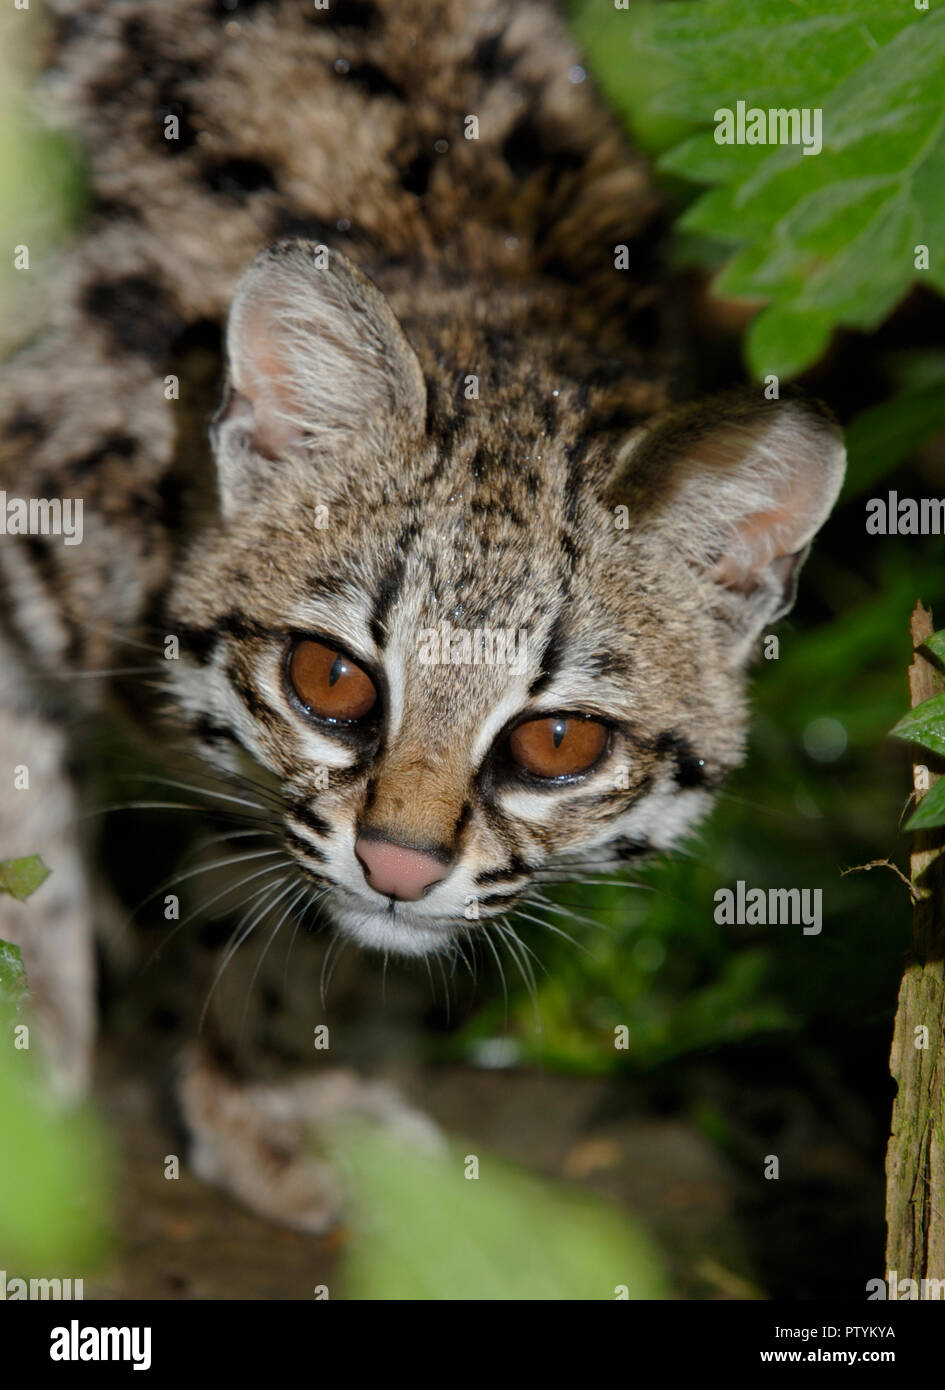 Ou Oncilla chat-tigre (Leopardus tigrinus) Amérique du Sud tropicale. Prisonnier Banque D'Images